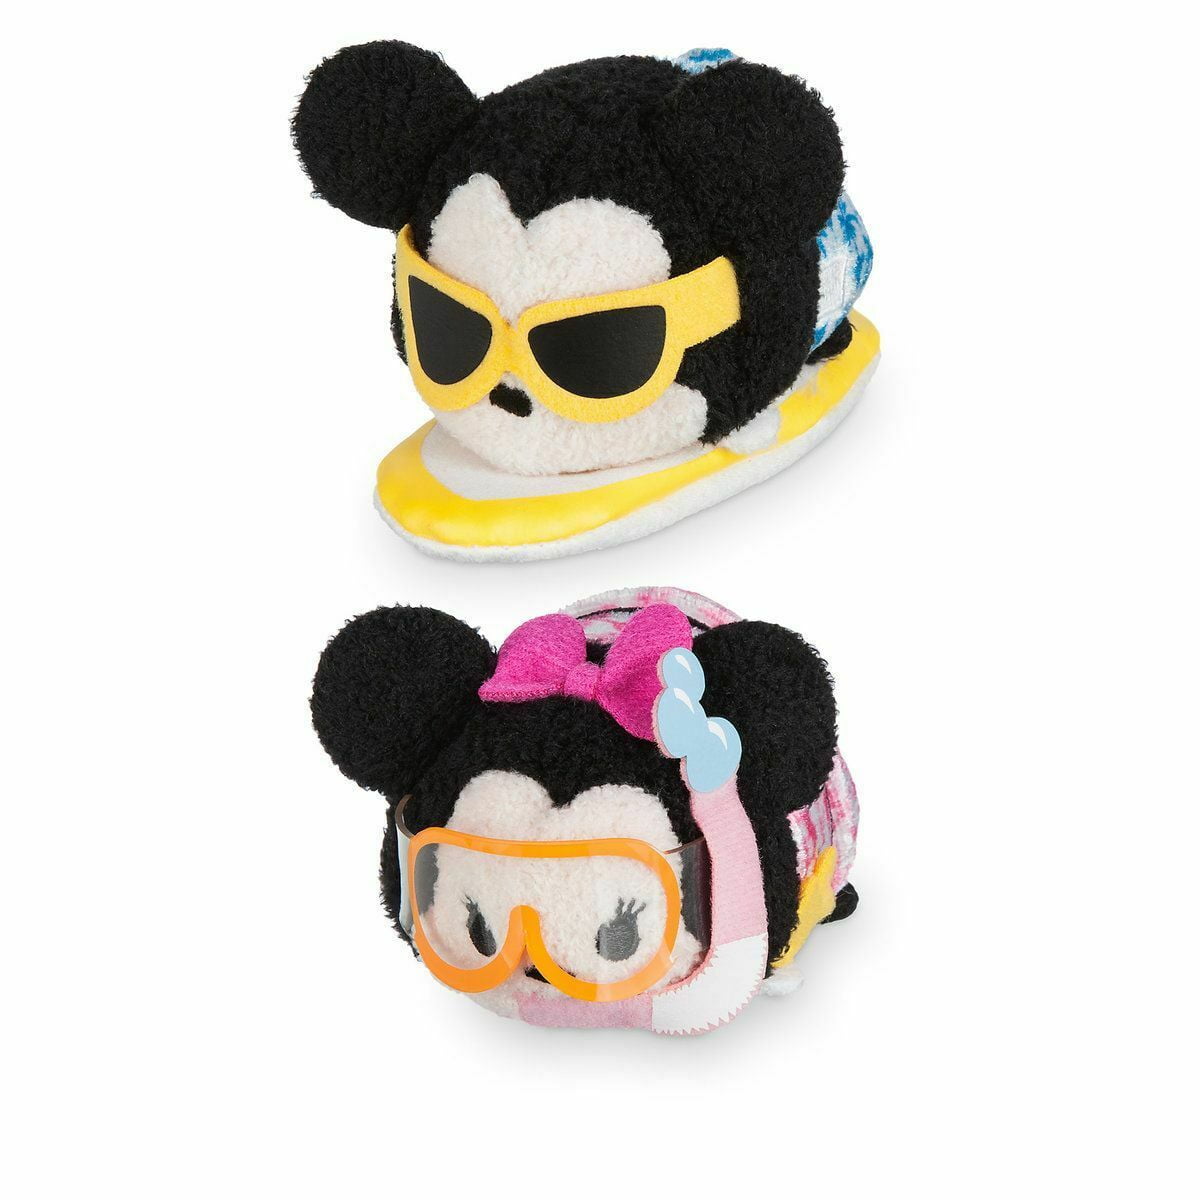 Disney Store Mickey & Minnie Mouse Mini Tsum Tsum 2pc Plush Set Toys 3 1/2" NWT 